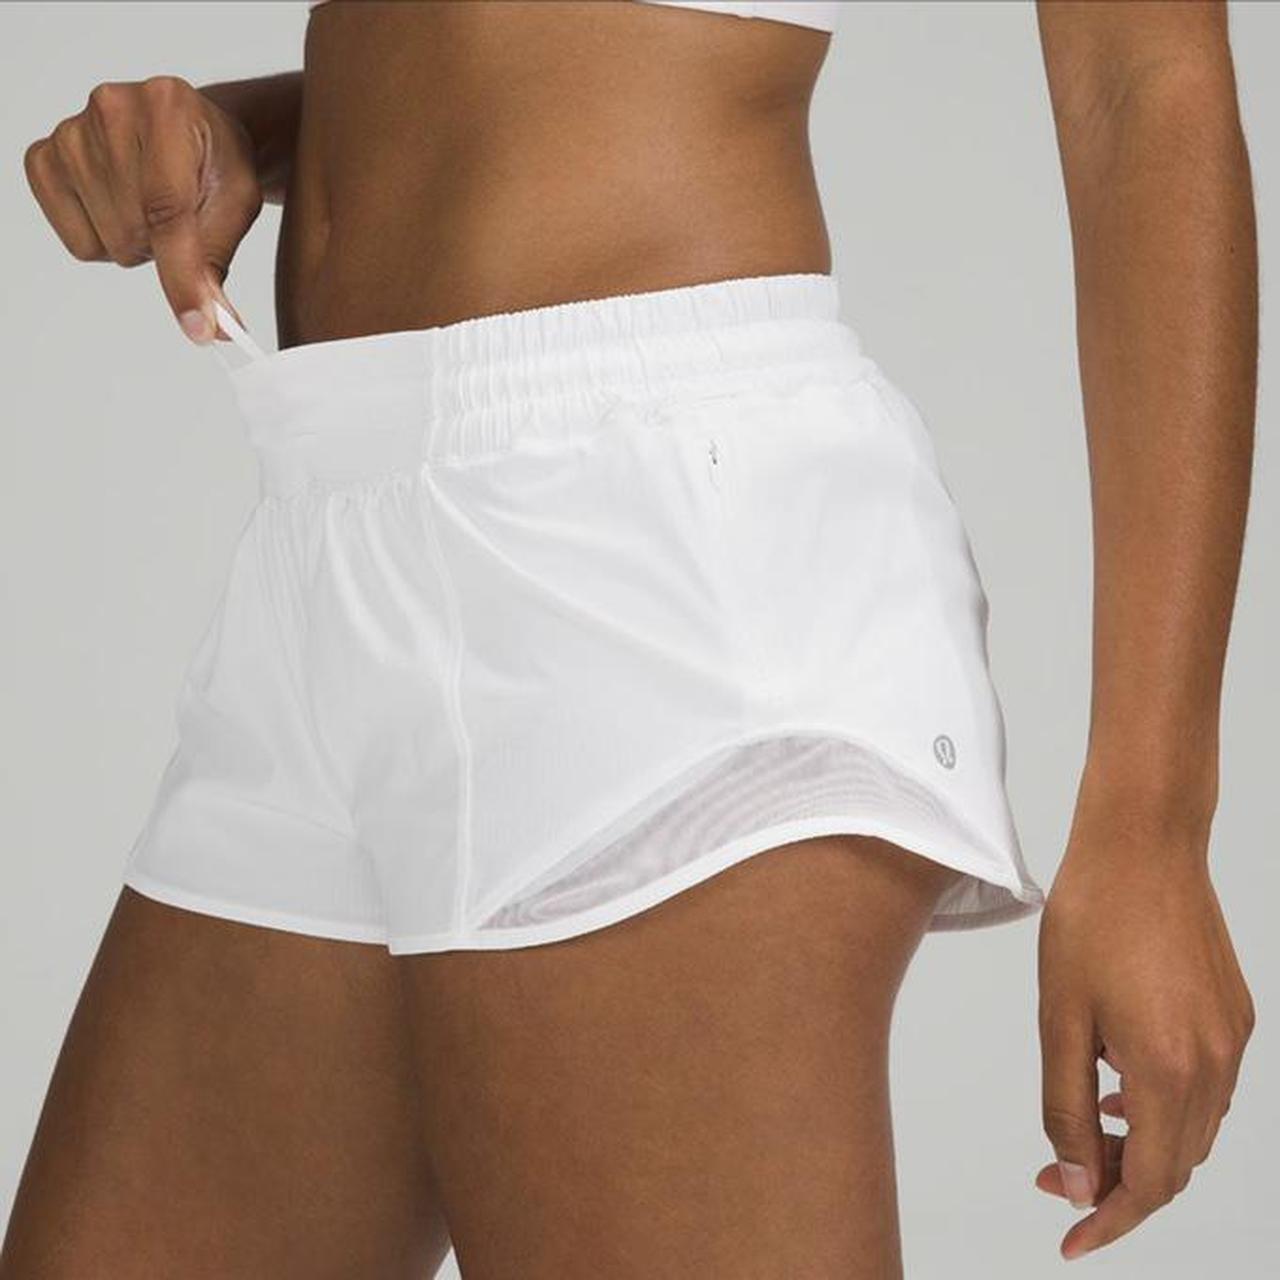 Lululemon hotty hot white 2.5 inch shorts low rise.